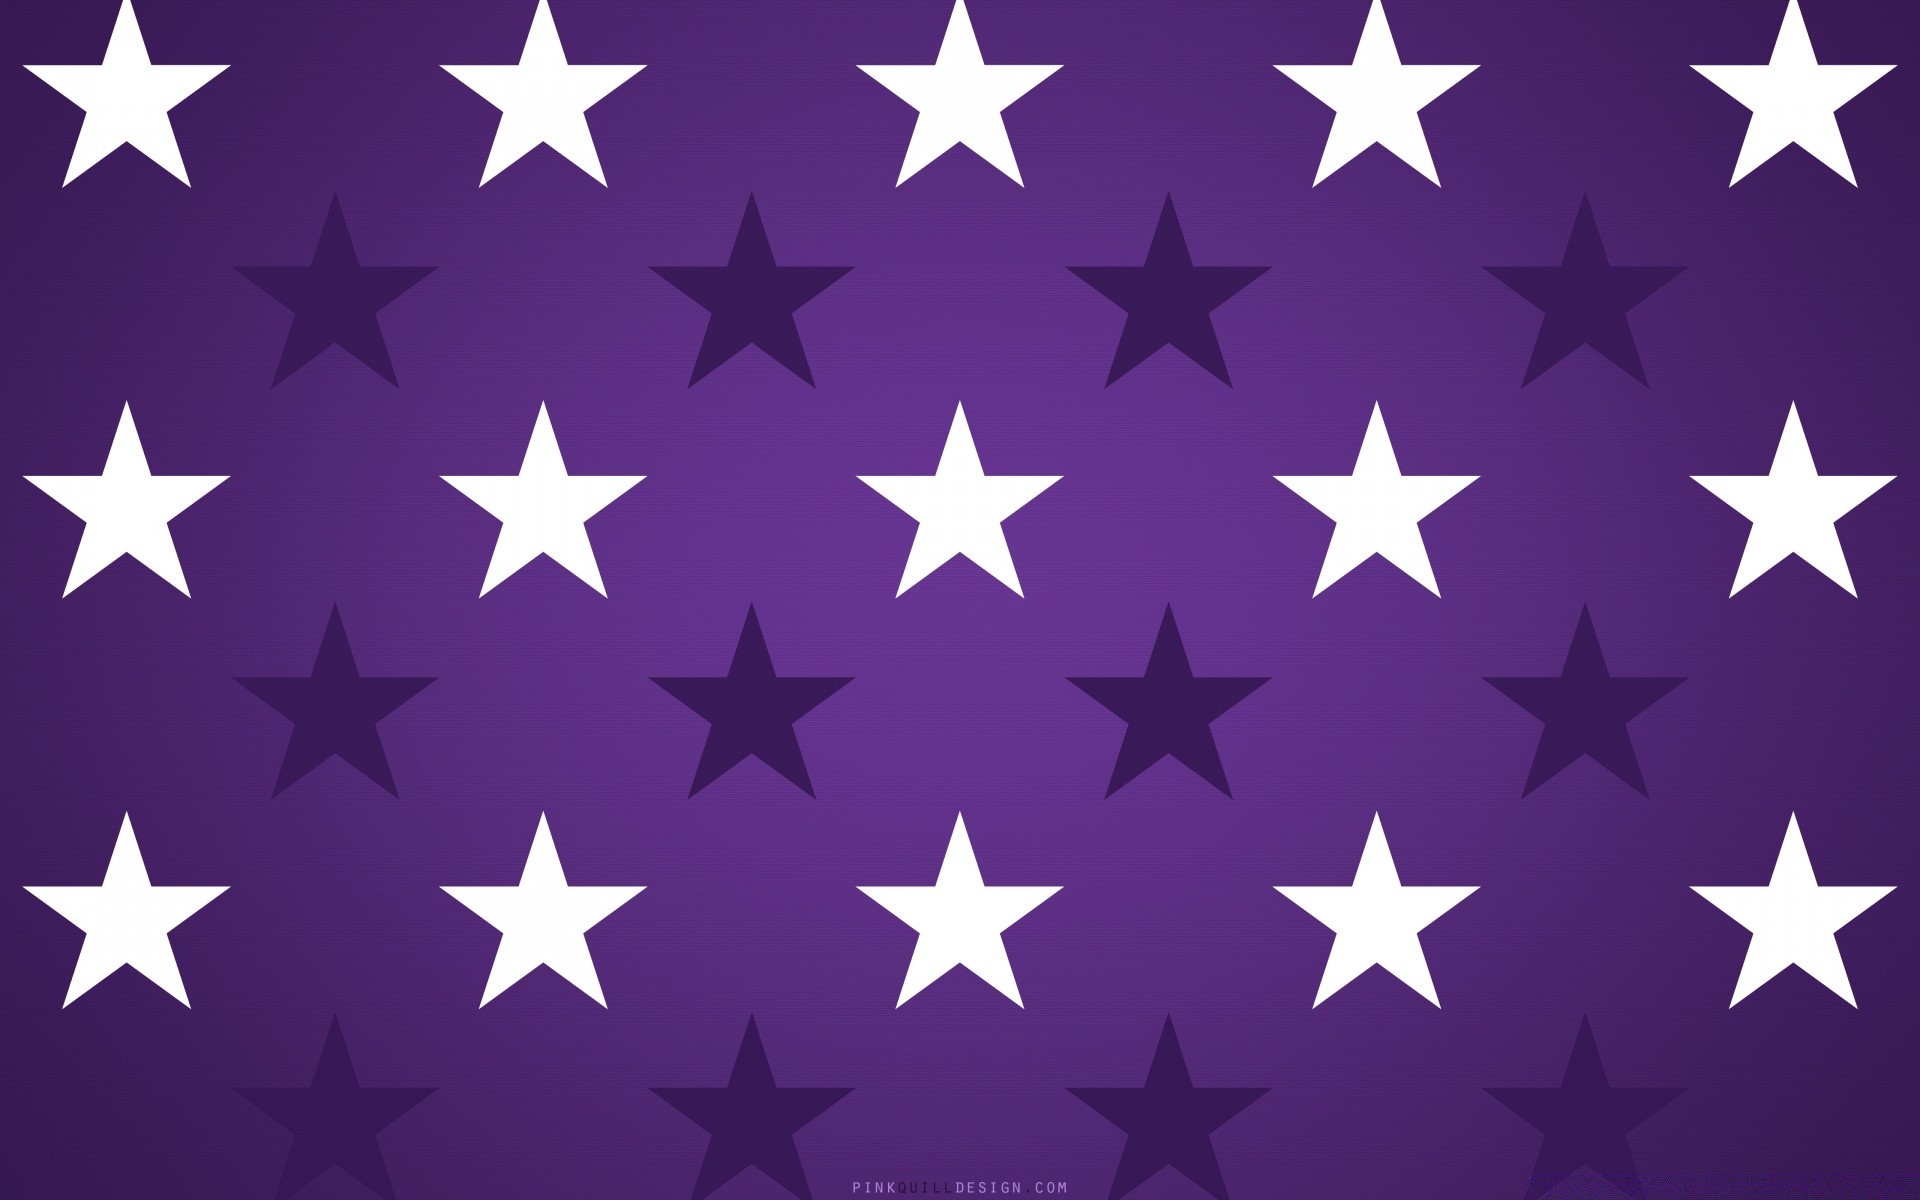 текстуры флаг символ патриотизм единство администрация гордость честь союз свобода награда светит эмблема формы знак страна военные